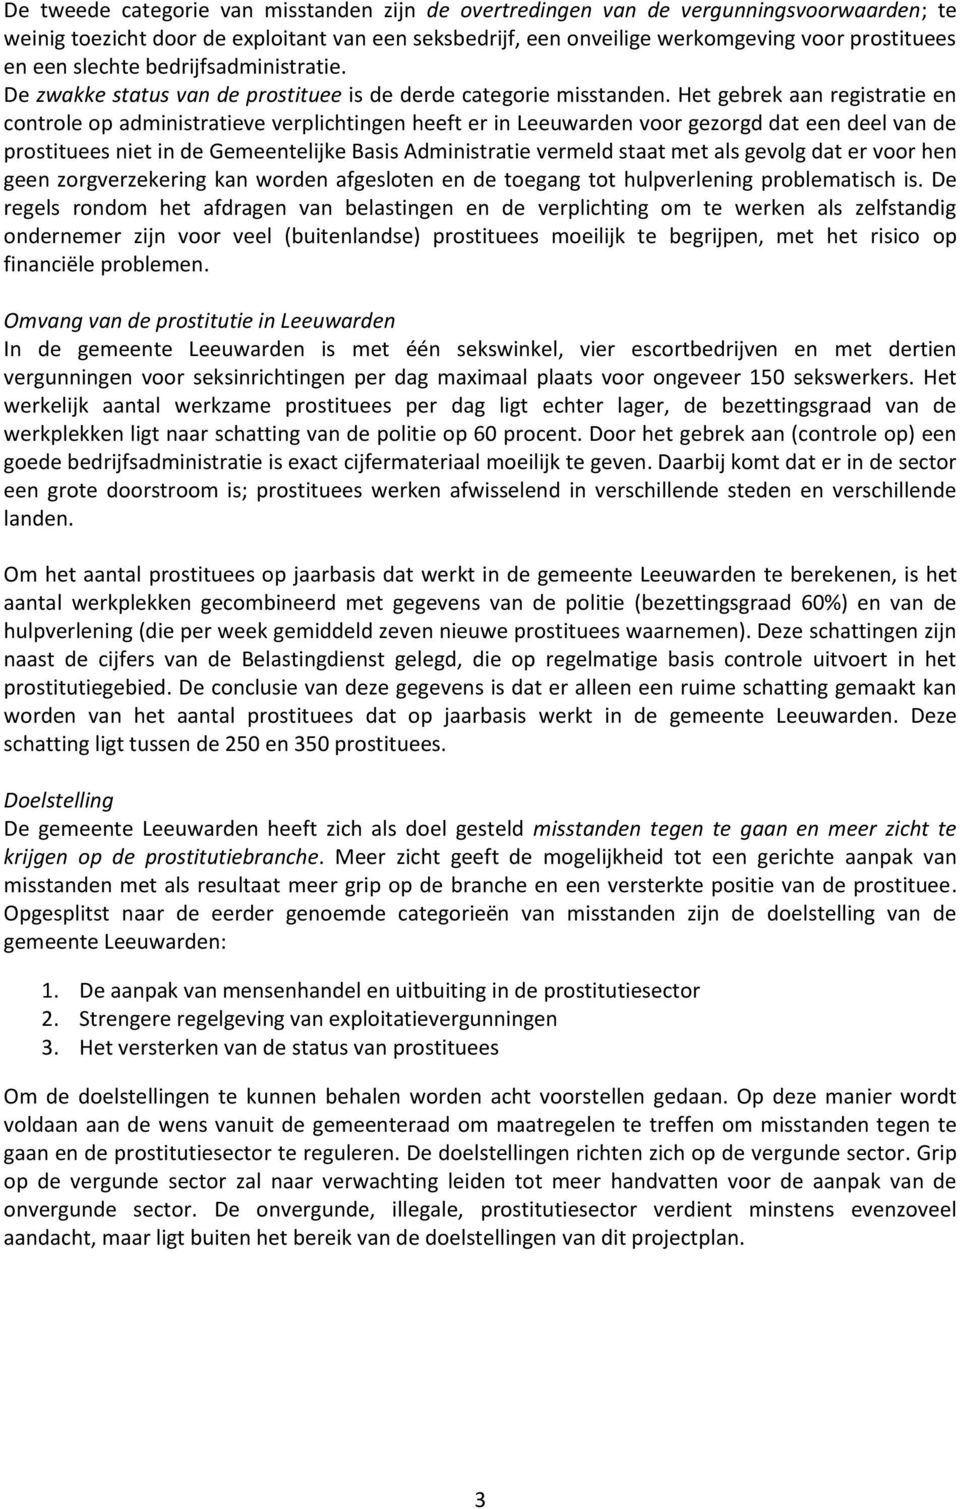 Het gebrek aan registratie en controle op administratieve verplichtingen heeft er in Leeuwarden voor gezorgd dat een deel van de prostituees niet in de Gemeentelijke Basis Administratie vermeld staat